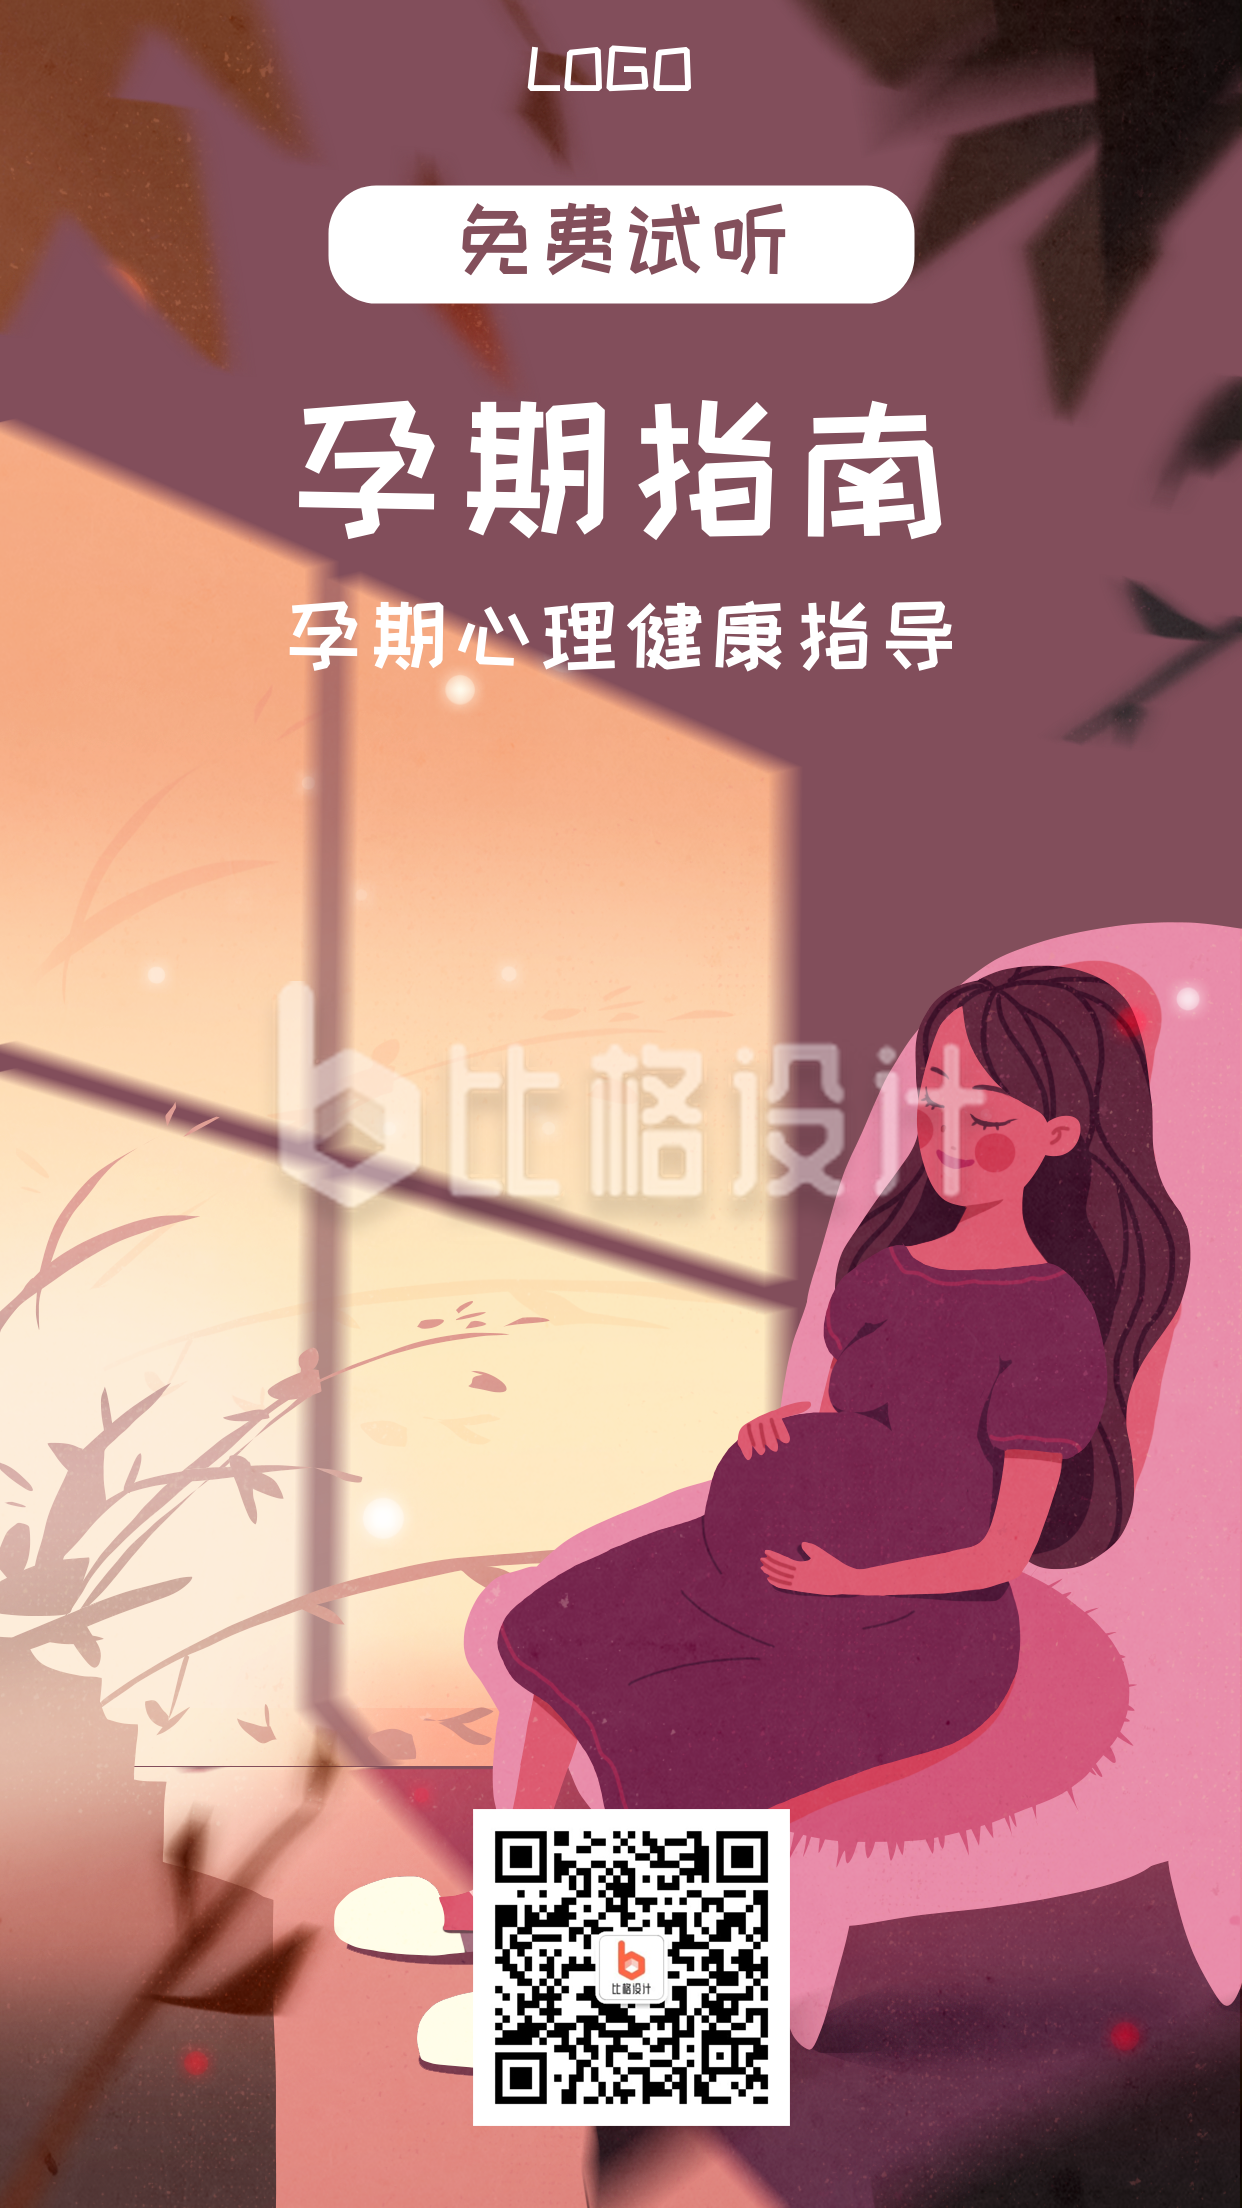 孕期指南亲子母婴注意事项手机海报